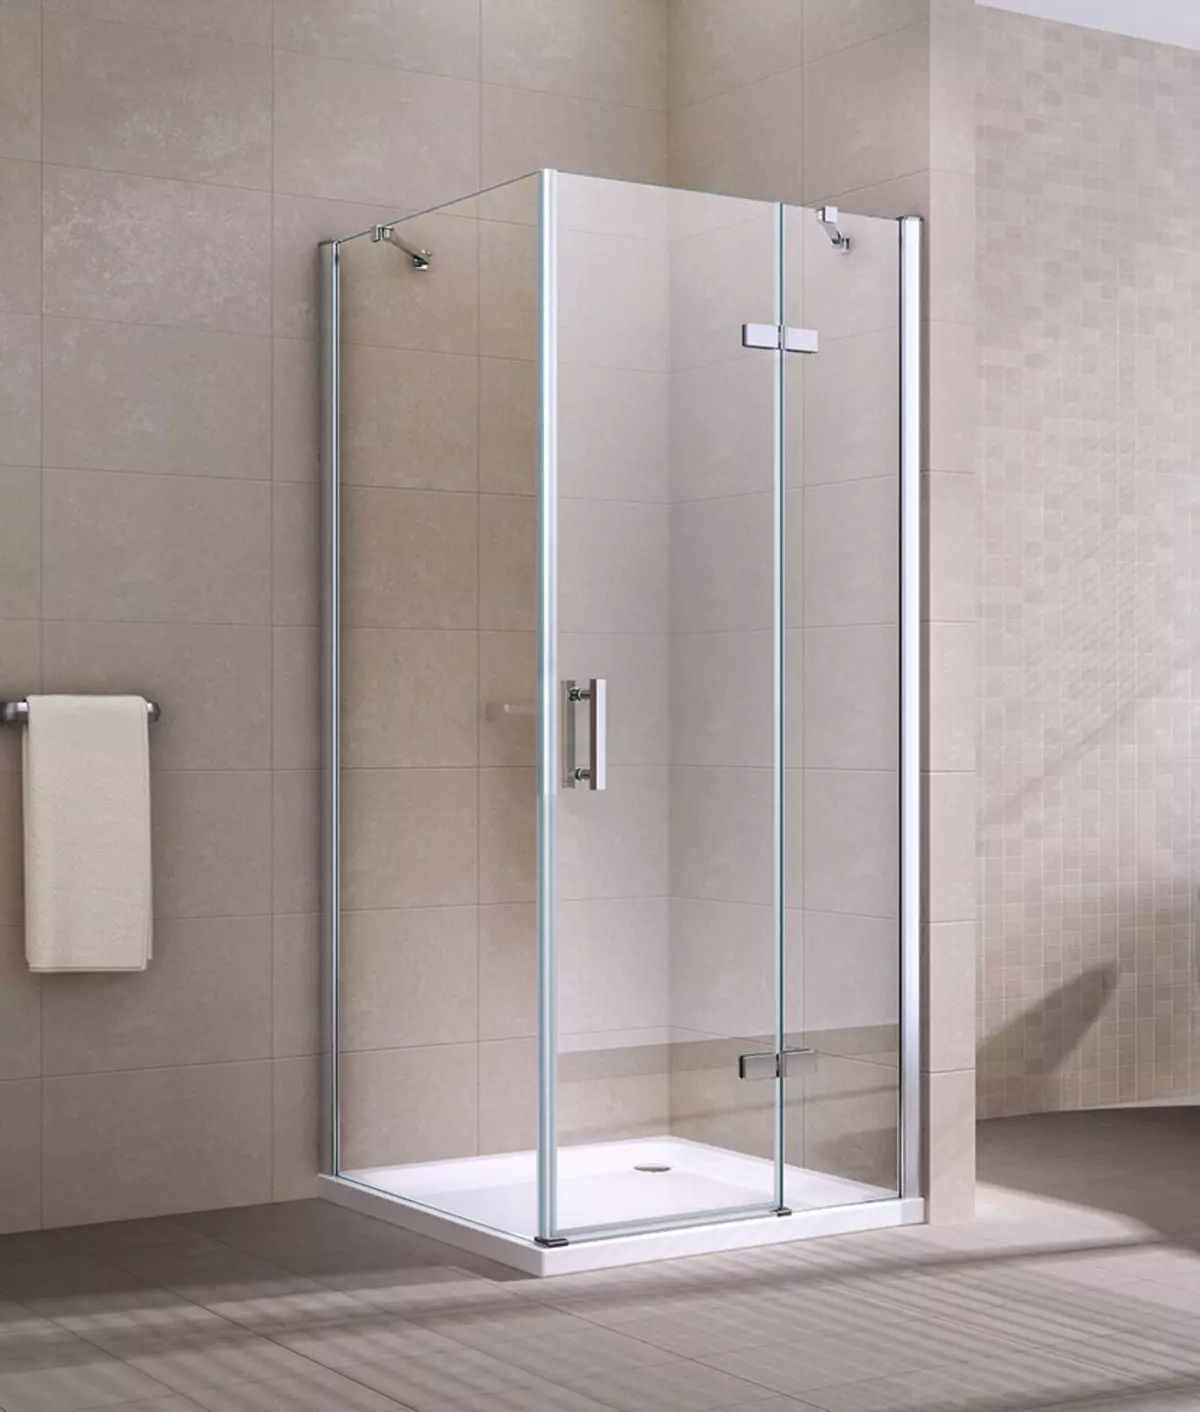 Fyrkantig duschkabin: 80x80, 90x90, 100x100 cm och andra storlekar, låga pallstugor, främre ingång, tak och annat 10320_18